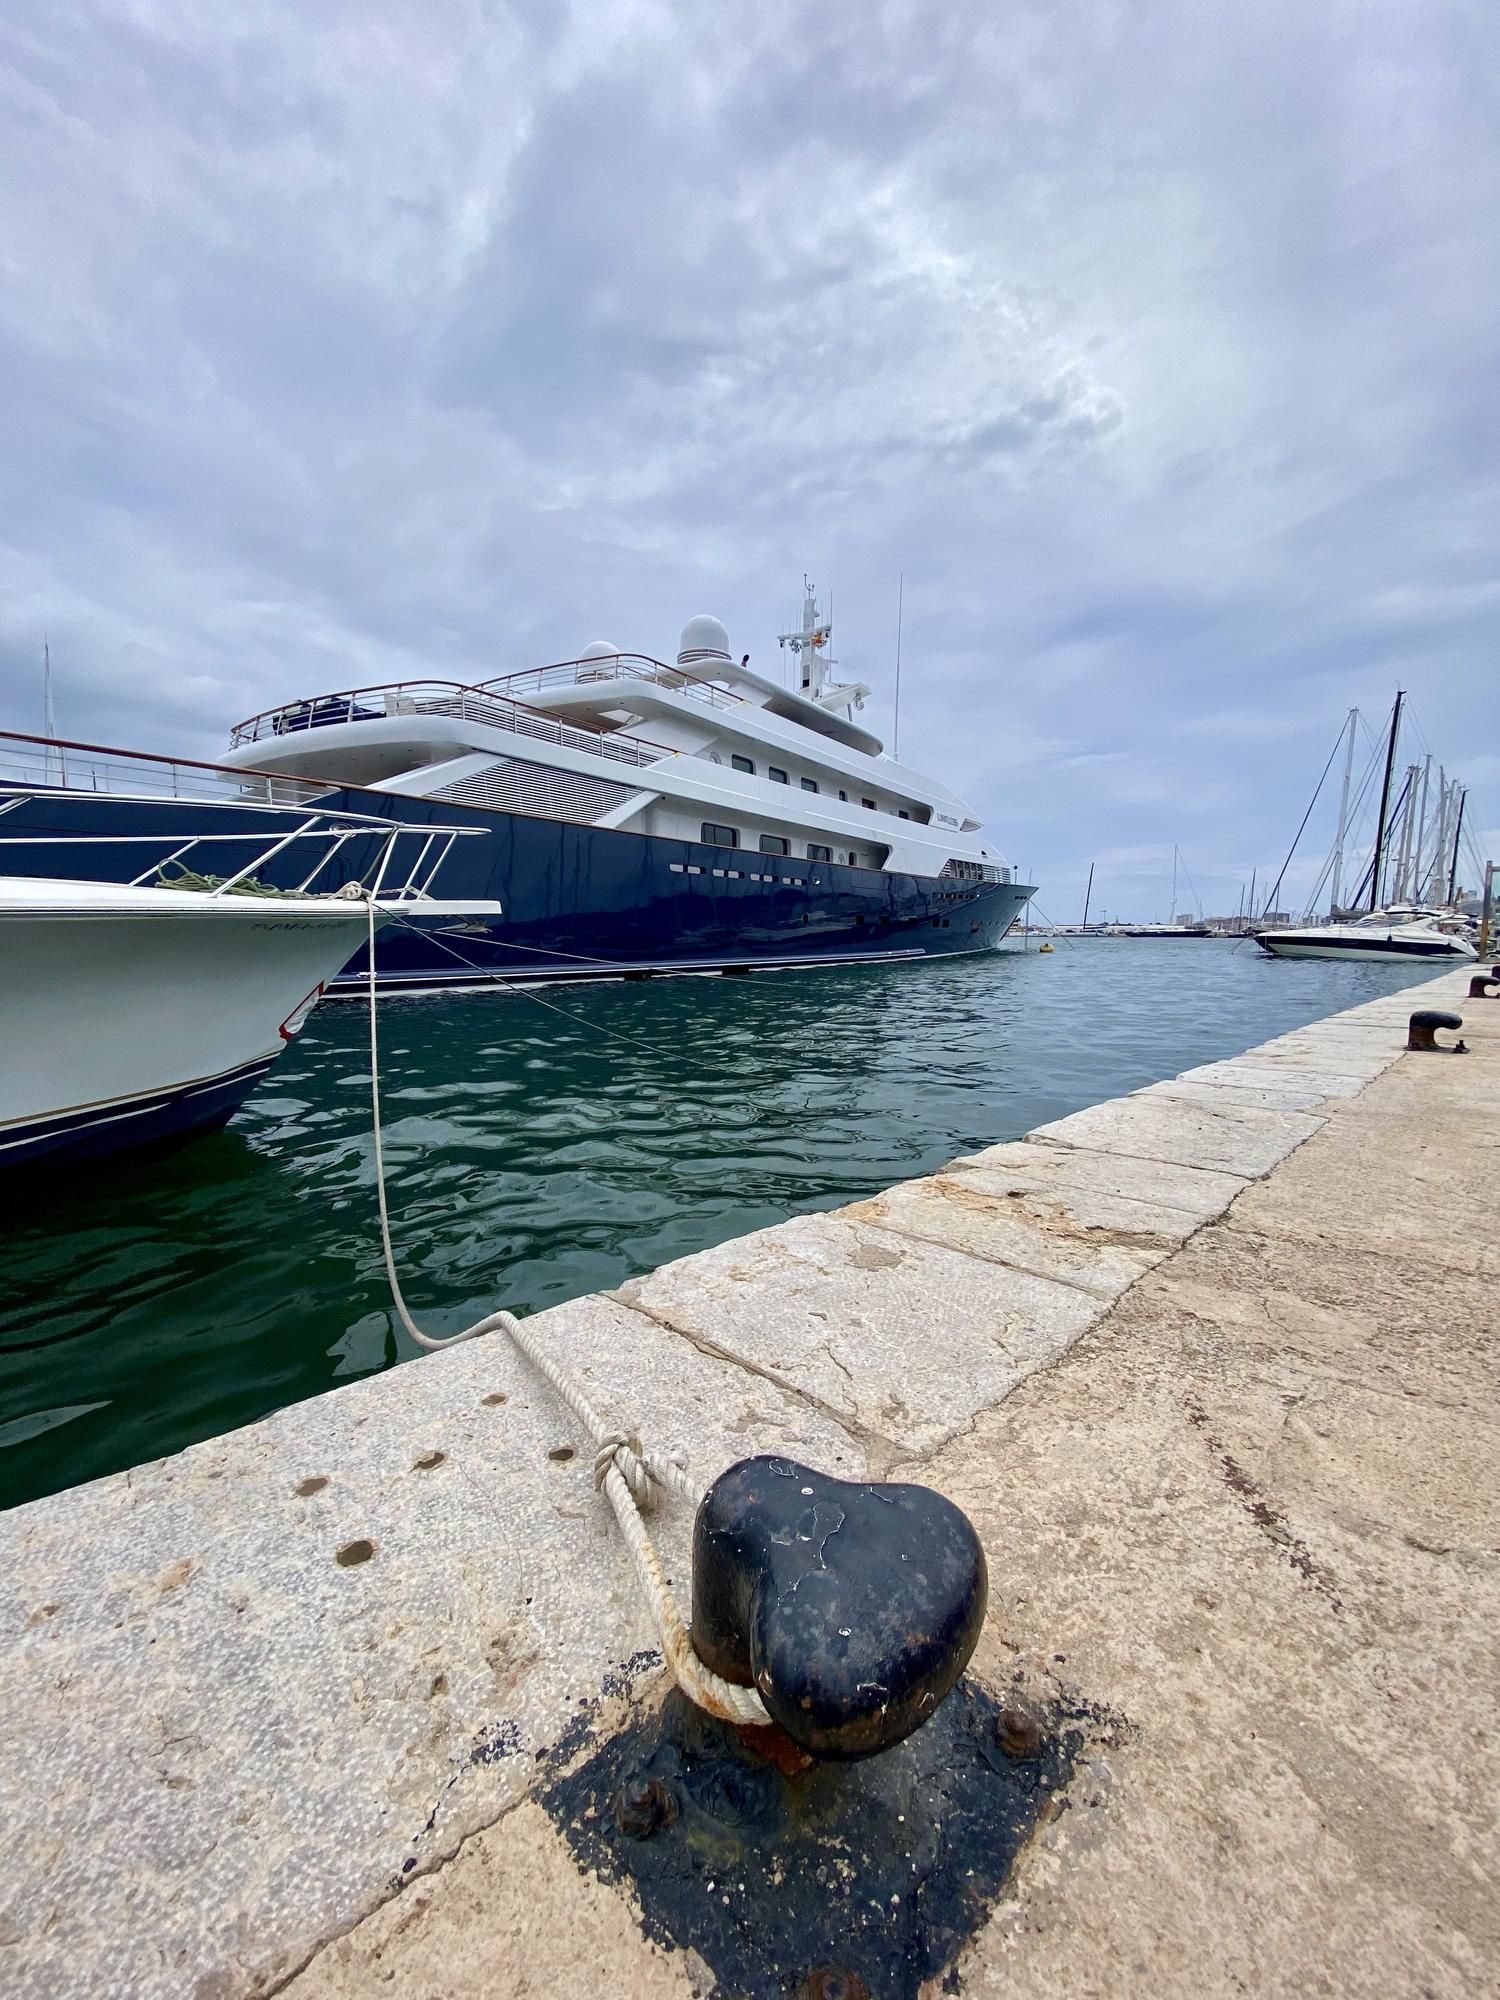 Zum Greifen nah: Die Megayacht "Limitless" in Palma de Mallorca